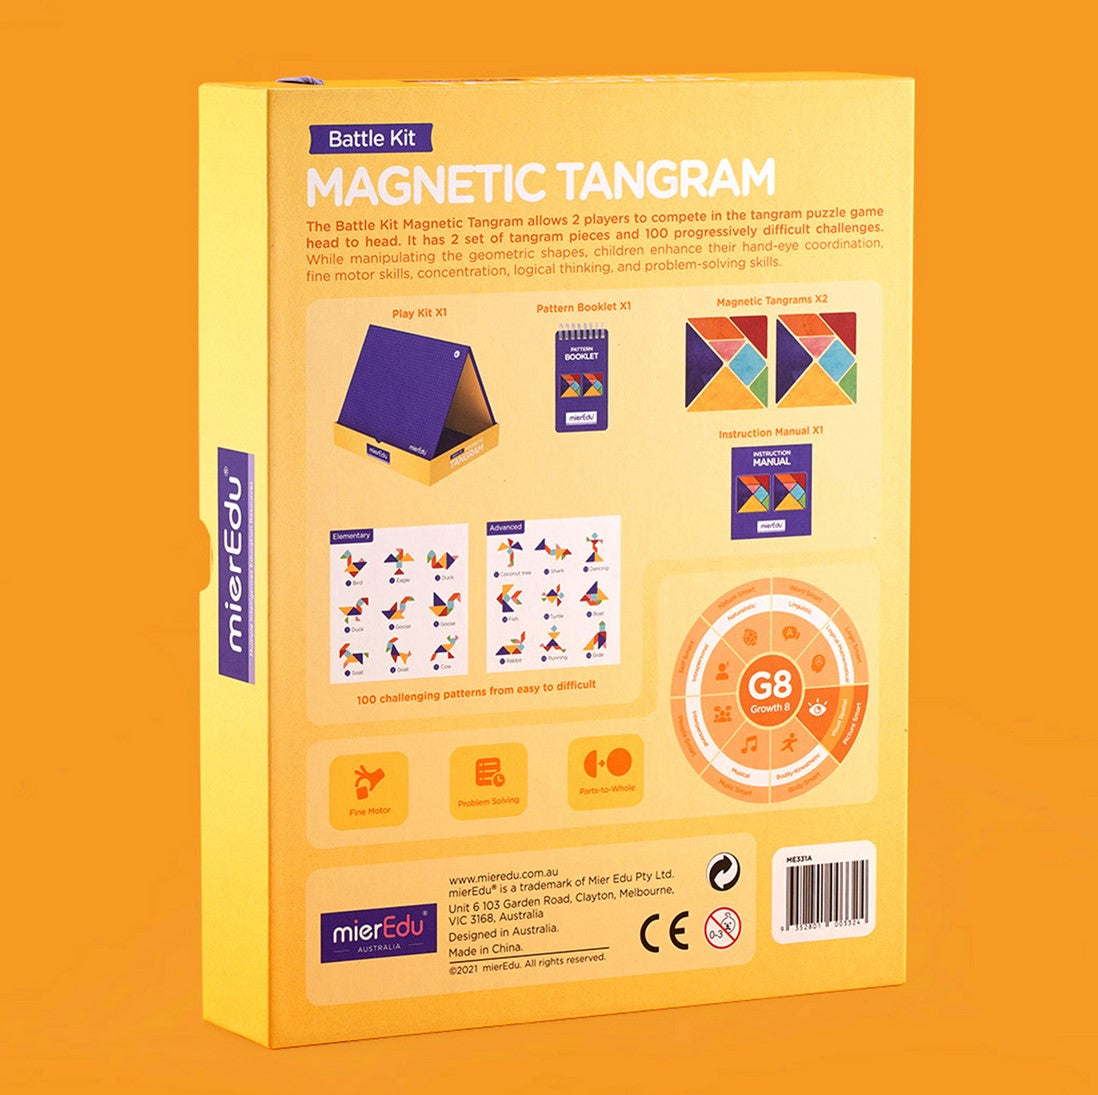 mierEdu | Magnetic Tangram - Battle Kit